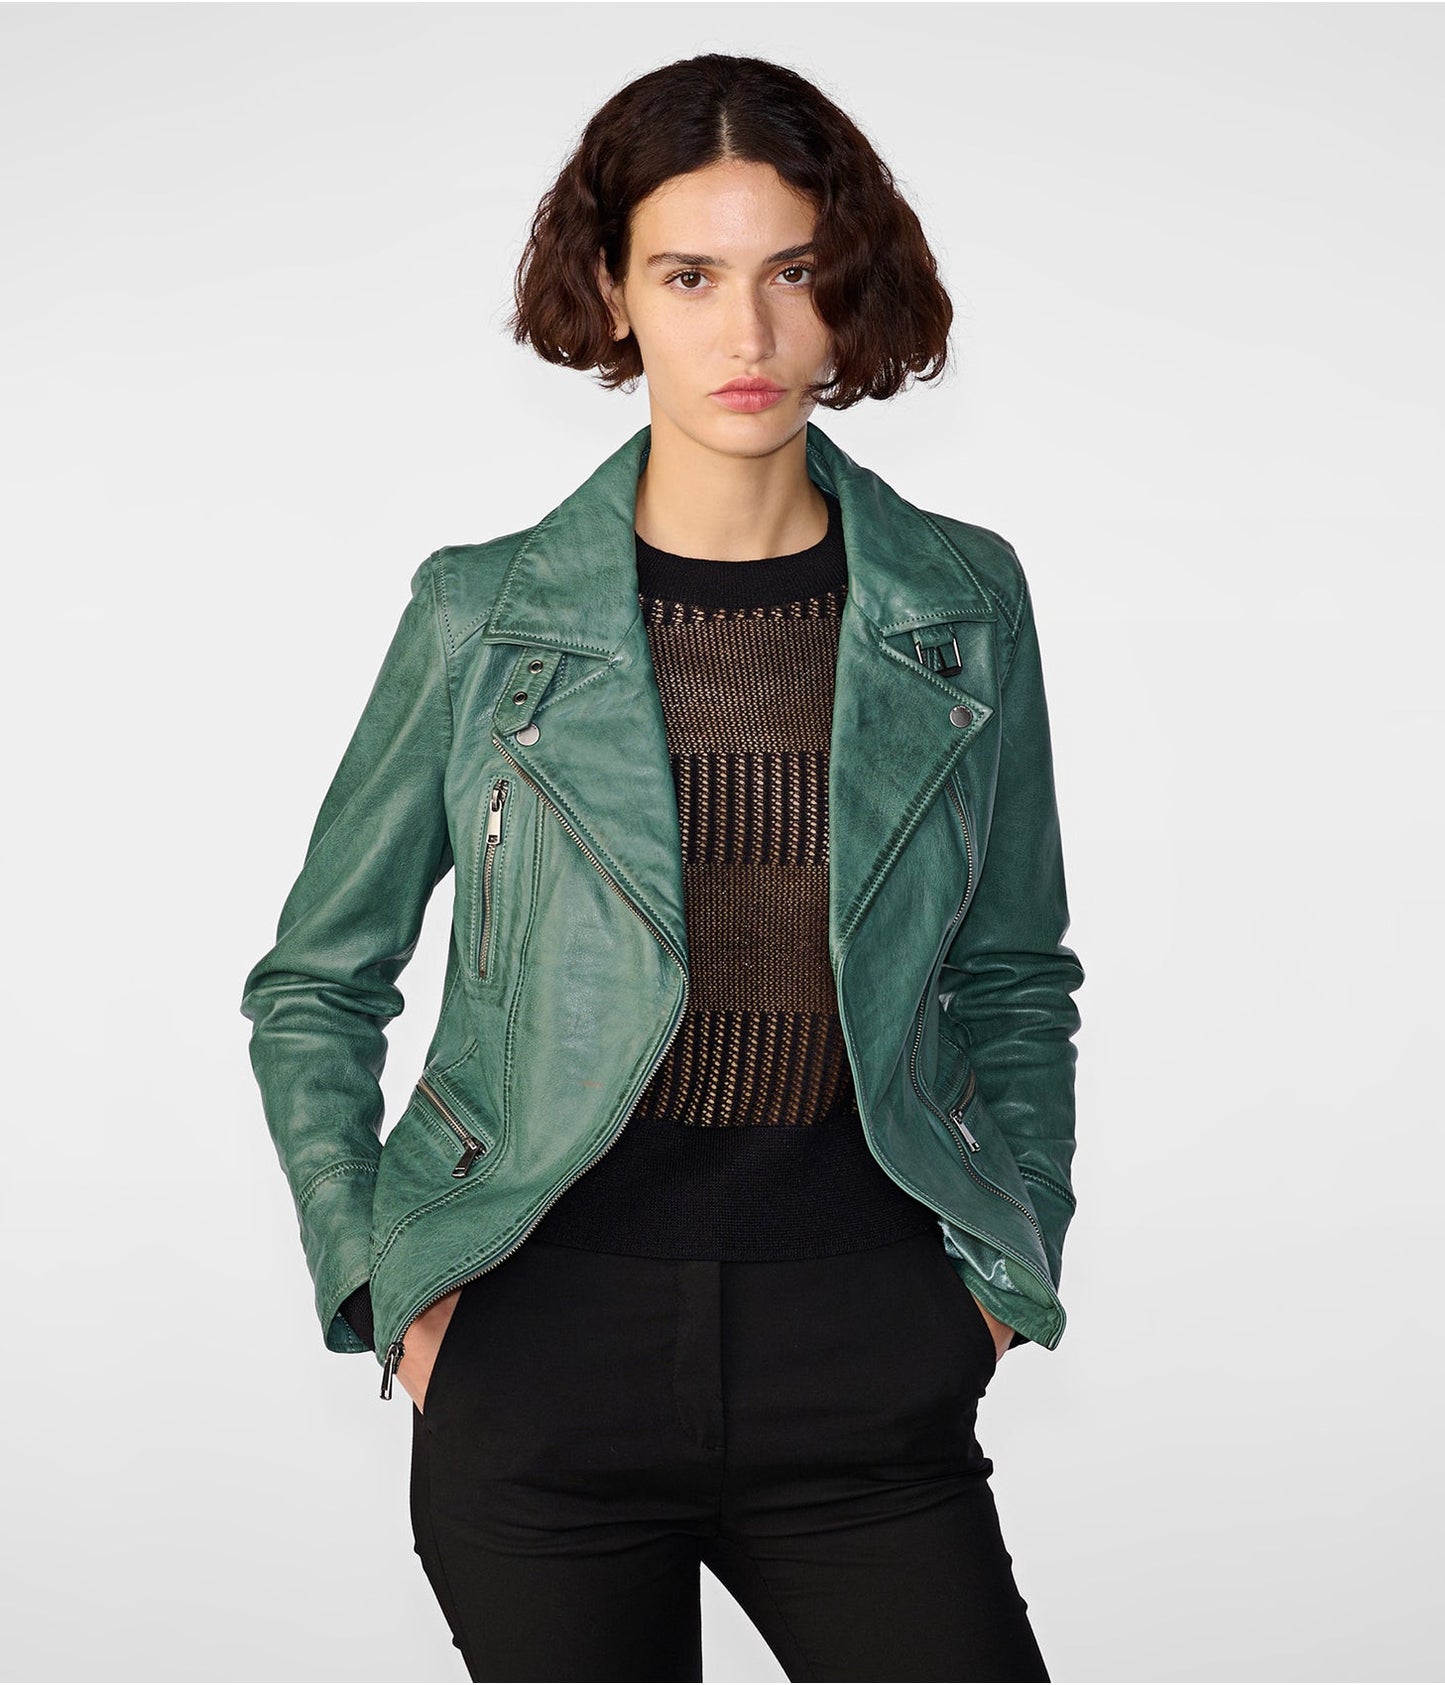 Women's Distressed Leather Biker Jacket In Sea Green